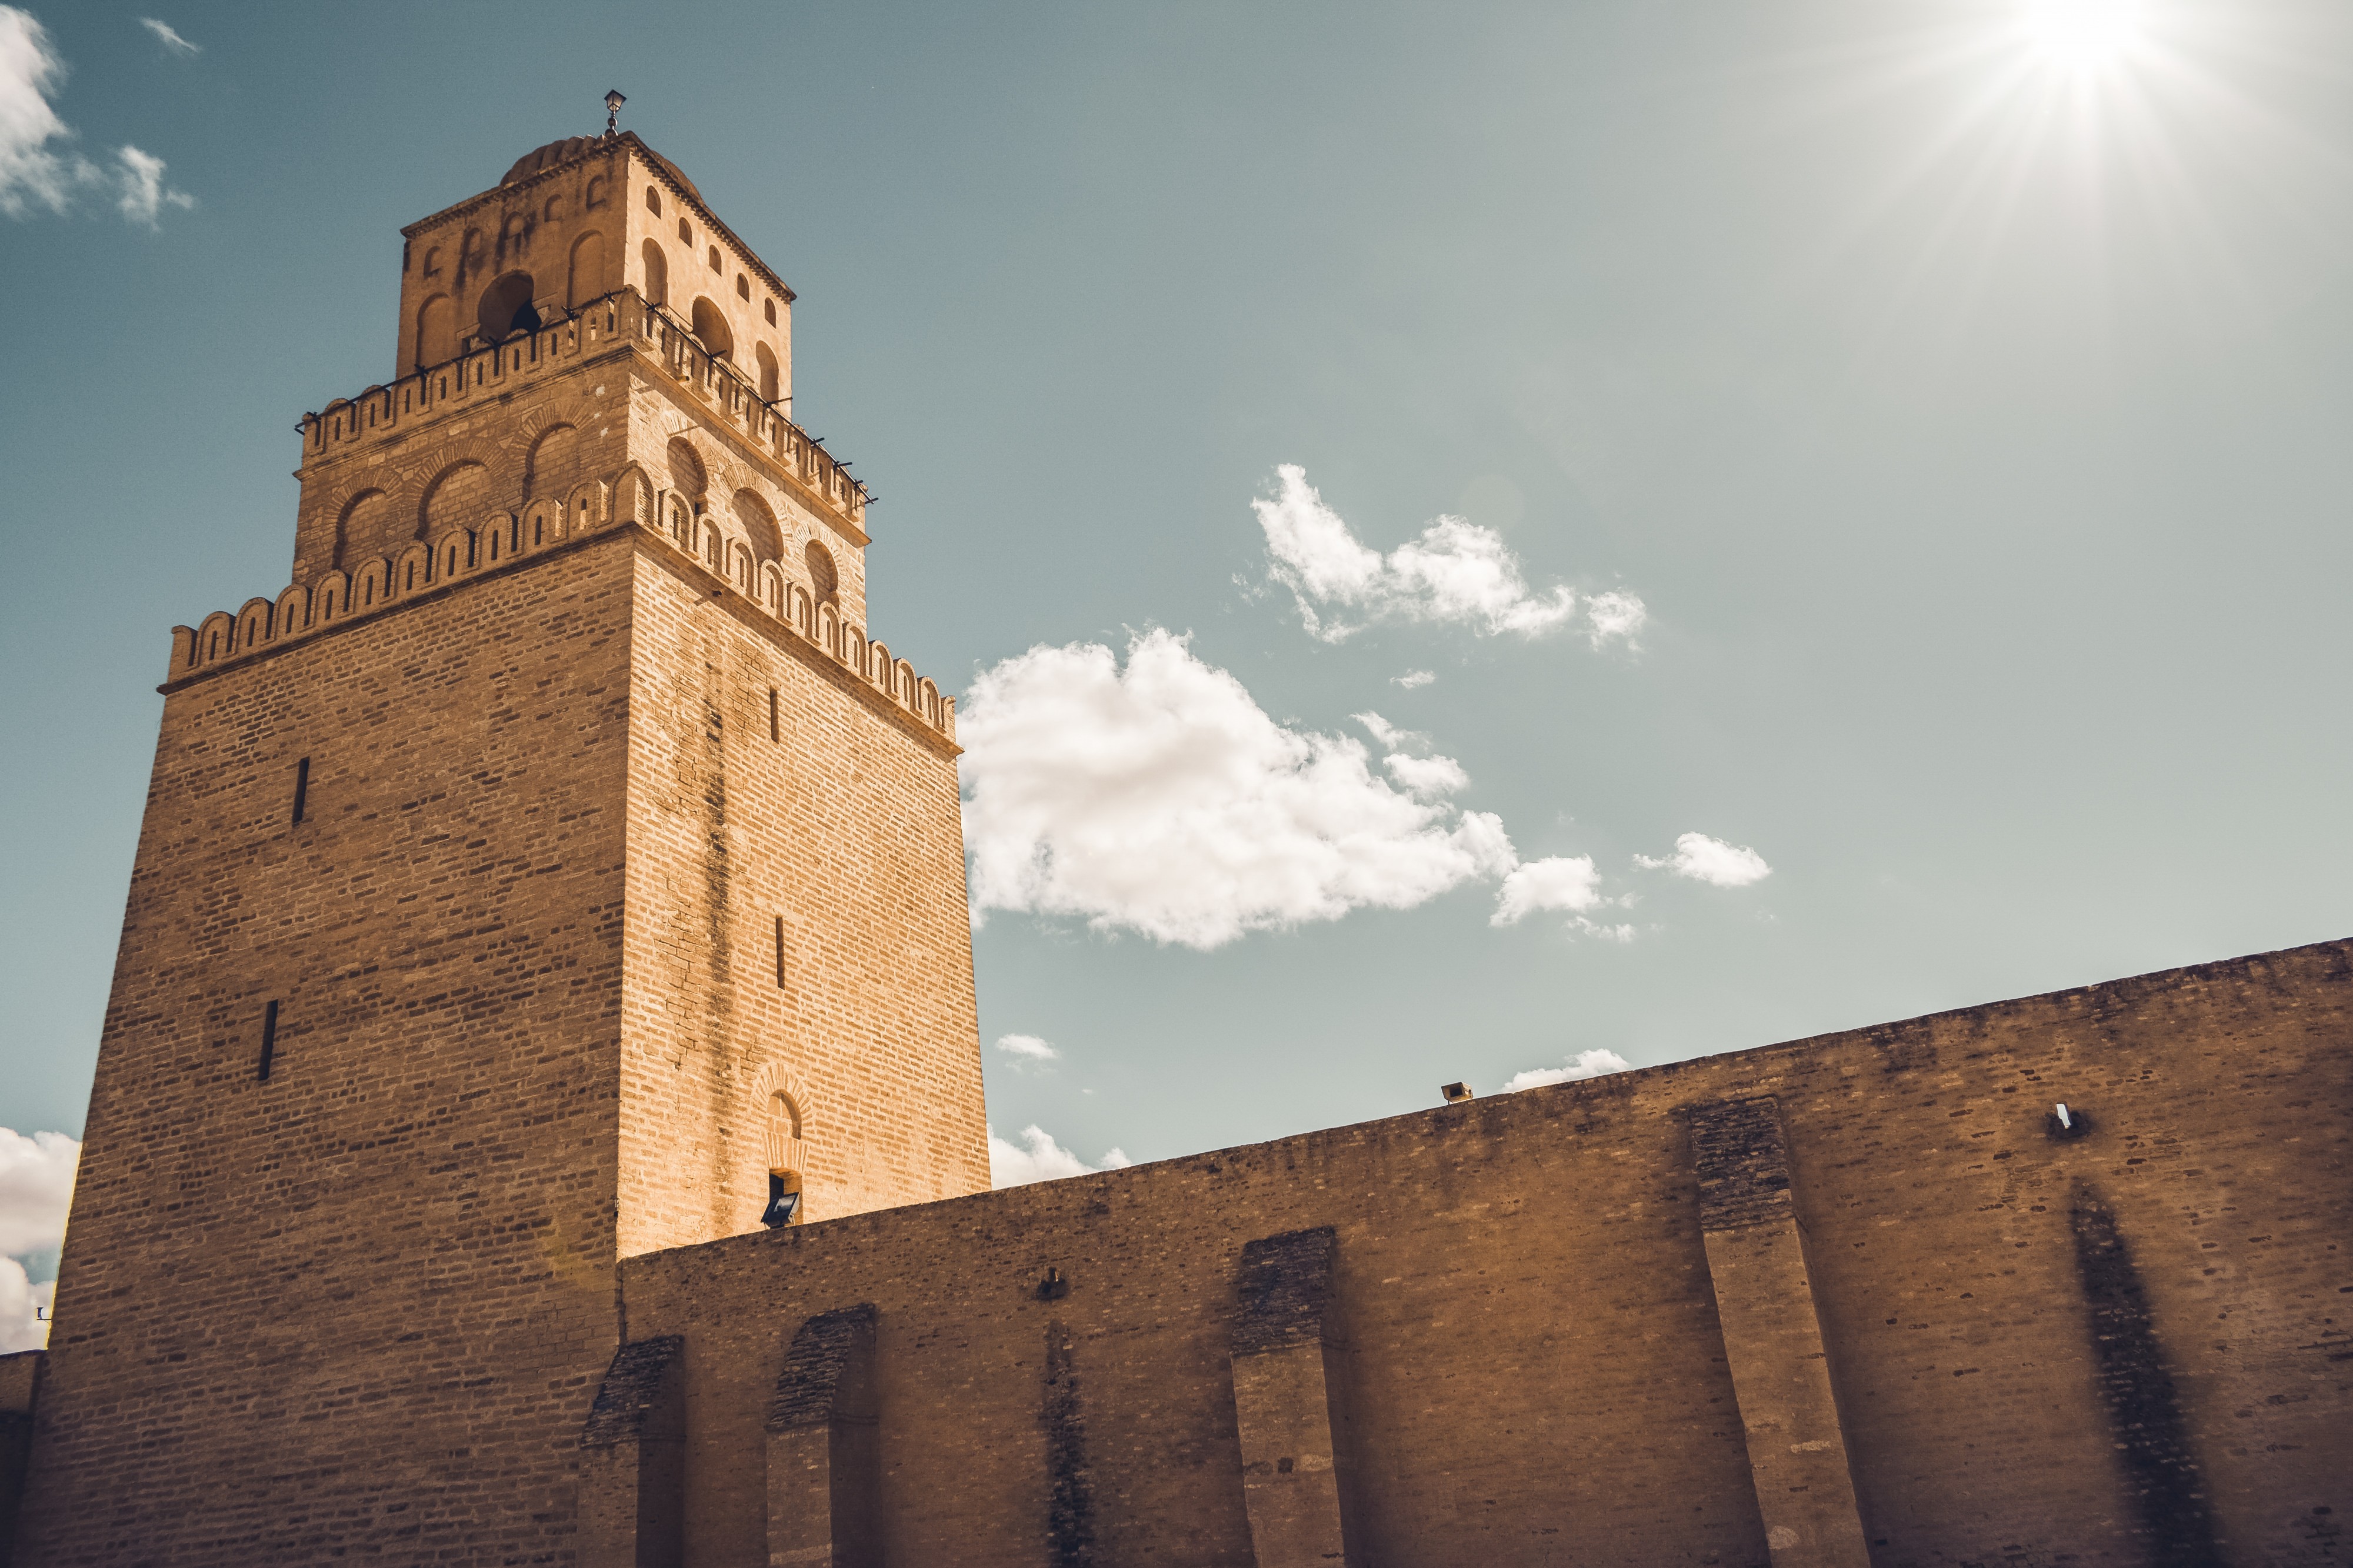 The Minaret of the Great Mosque Okba of Kairouan, Tunisia